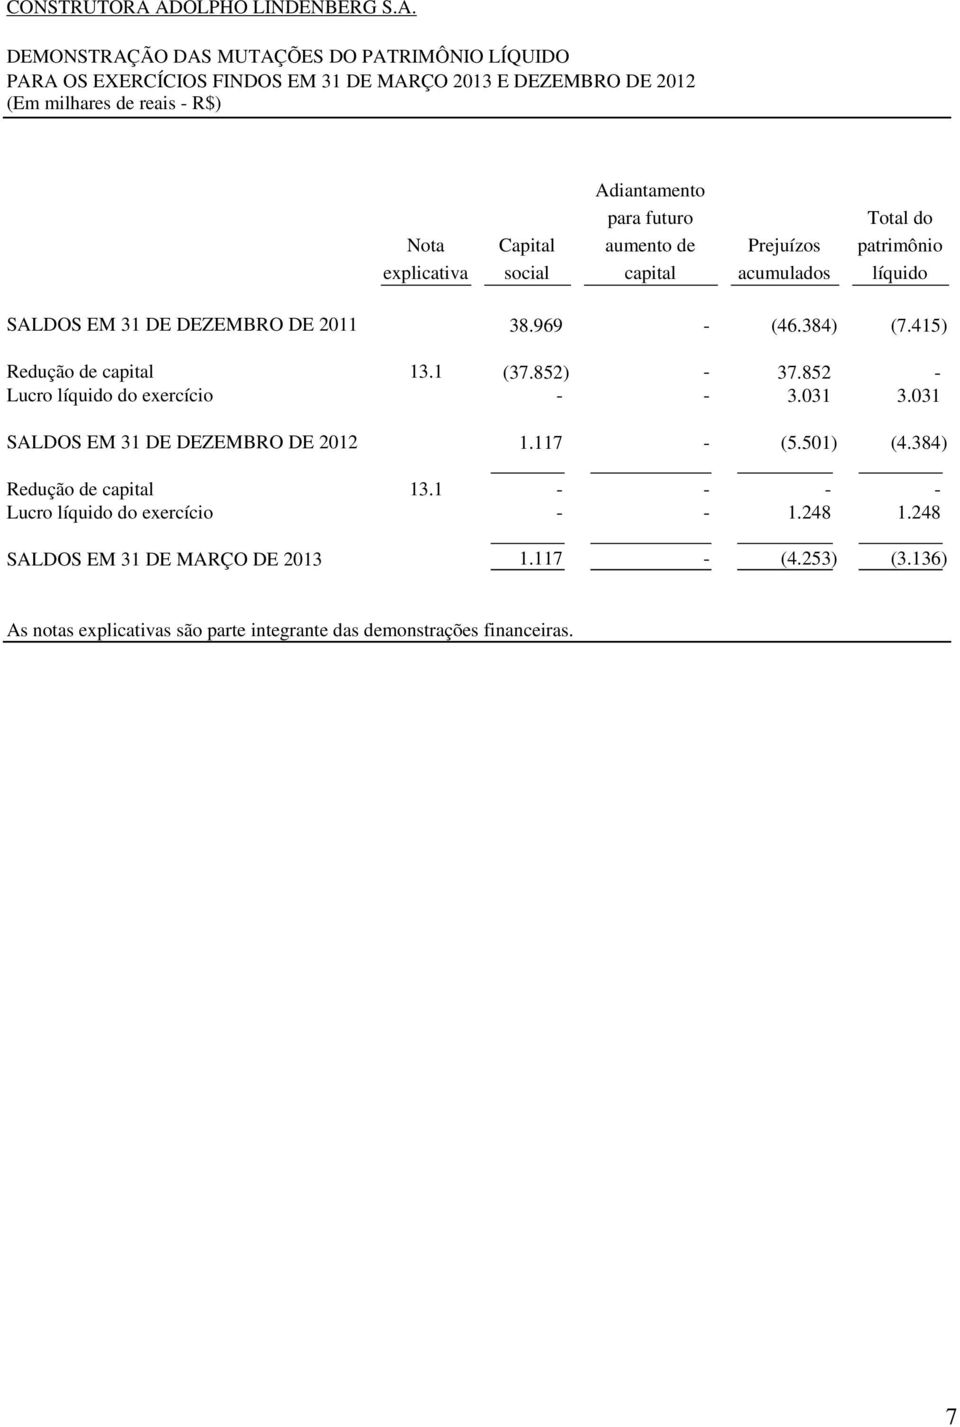 explicativa Capital social Adiantamento para futuro aumento de capital Prejuízos acumulados Total do patrimônio líquido SALDOS EM 31 DE DEZEMBRO DE 2011 38.969 - (46.384) (7.